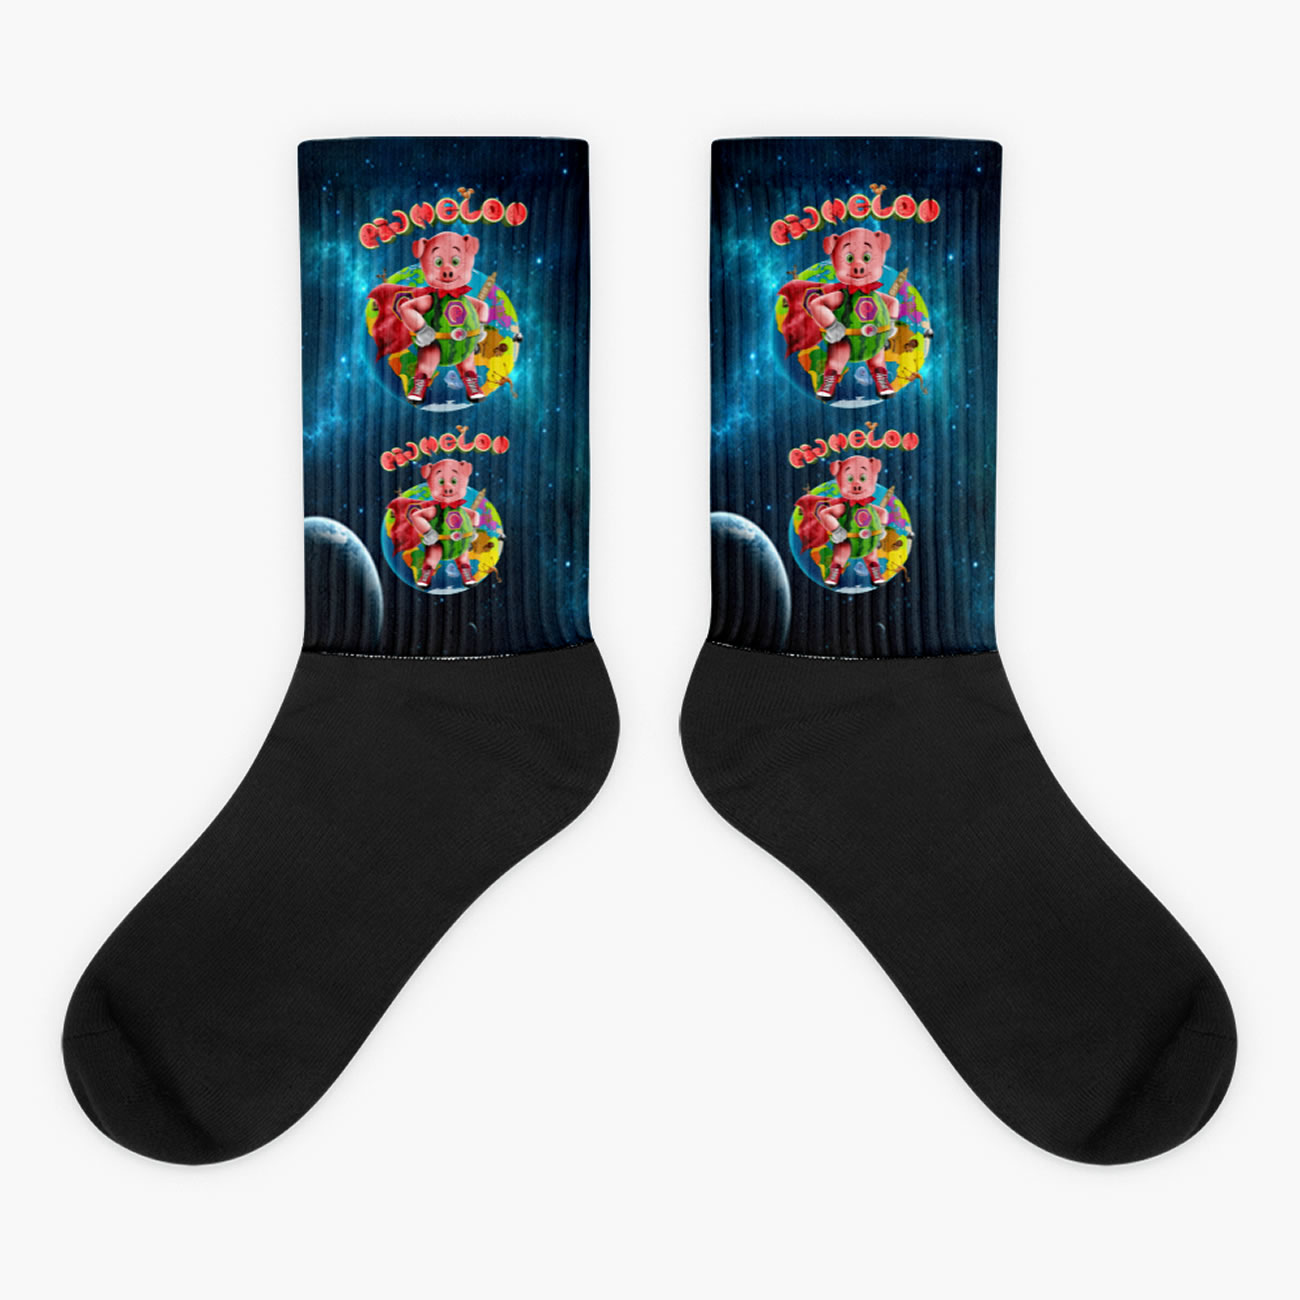 socks on earth 2